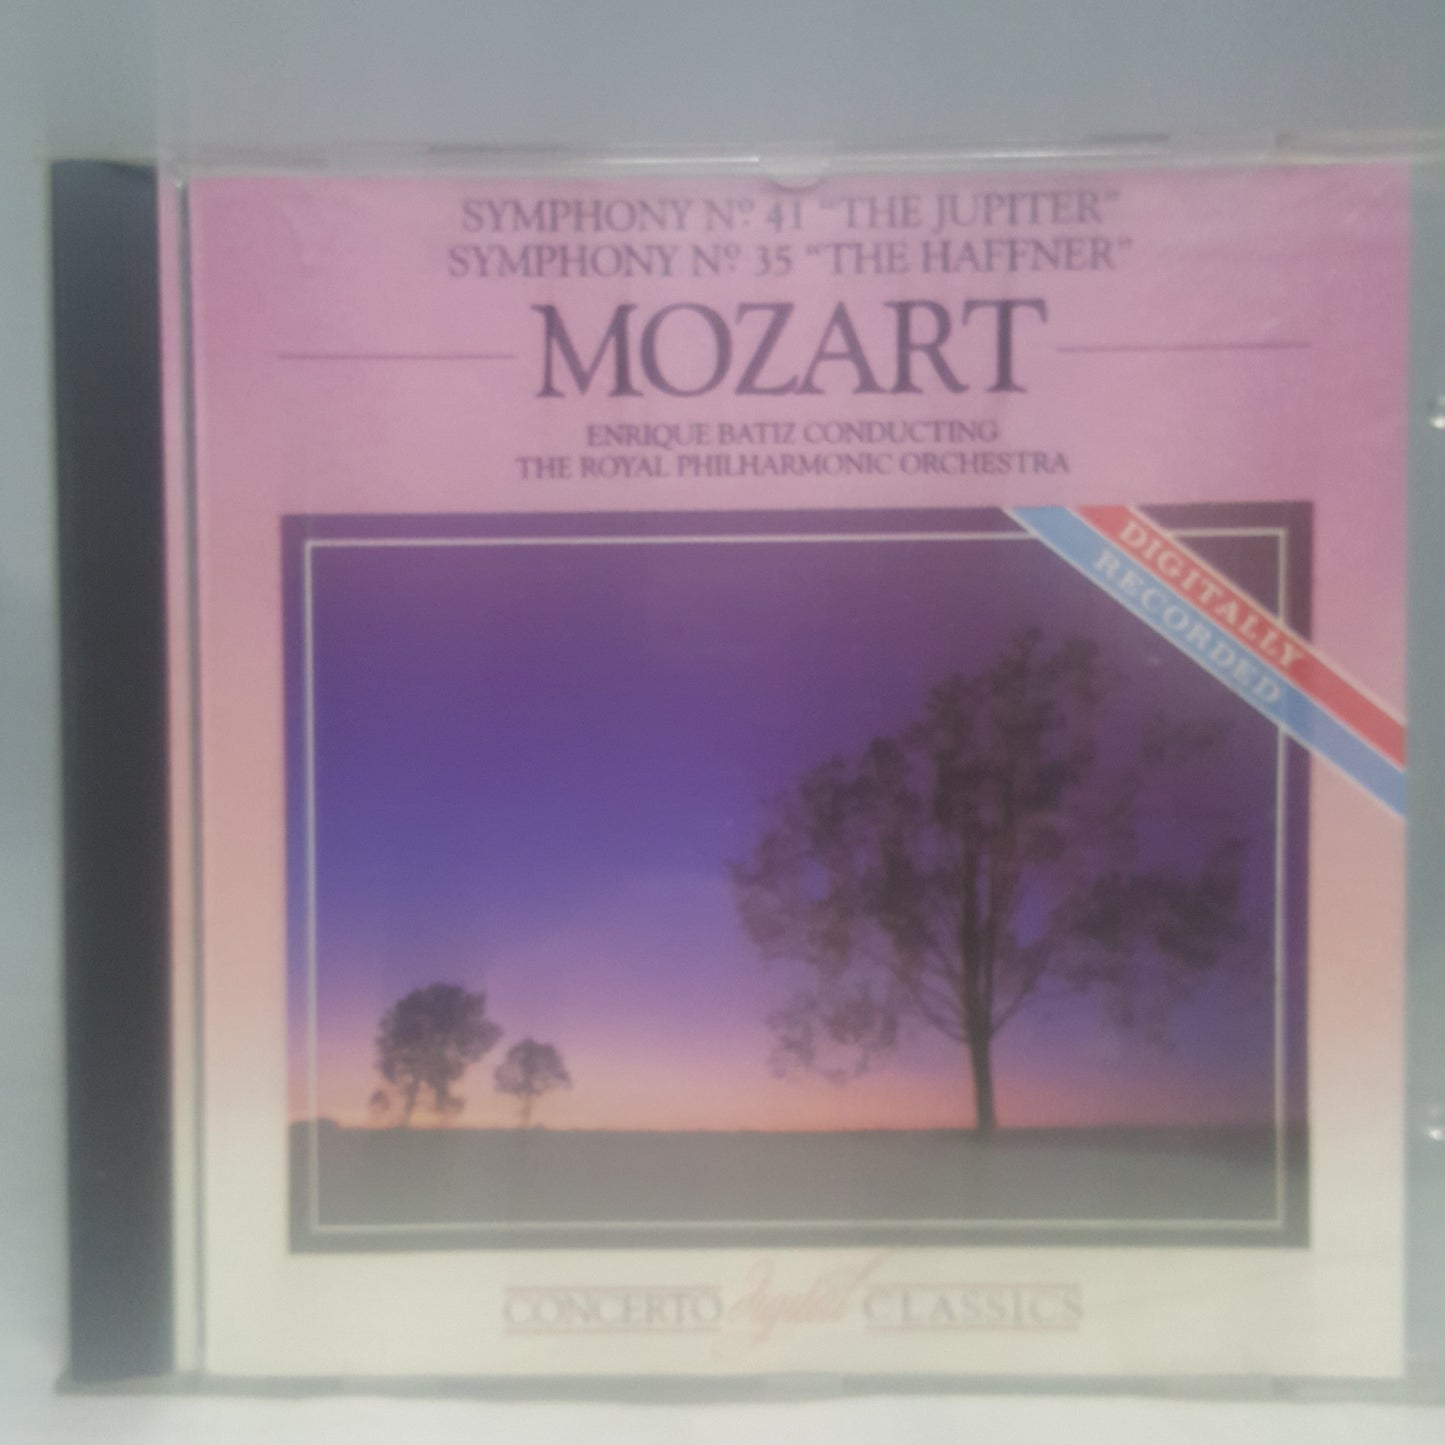 CD - Mozart Symphony No 41 The Jupiter